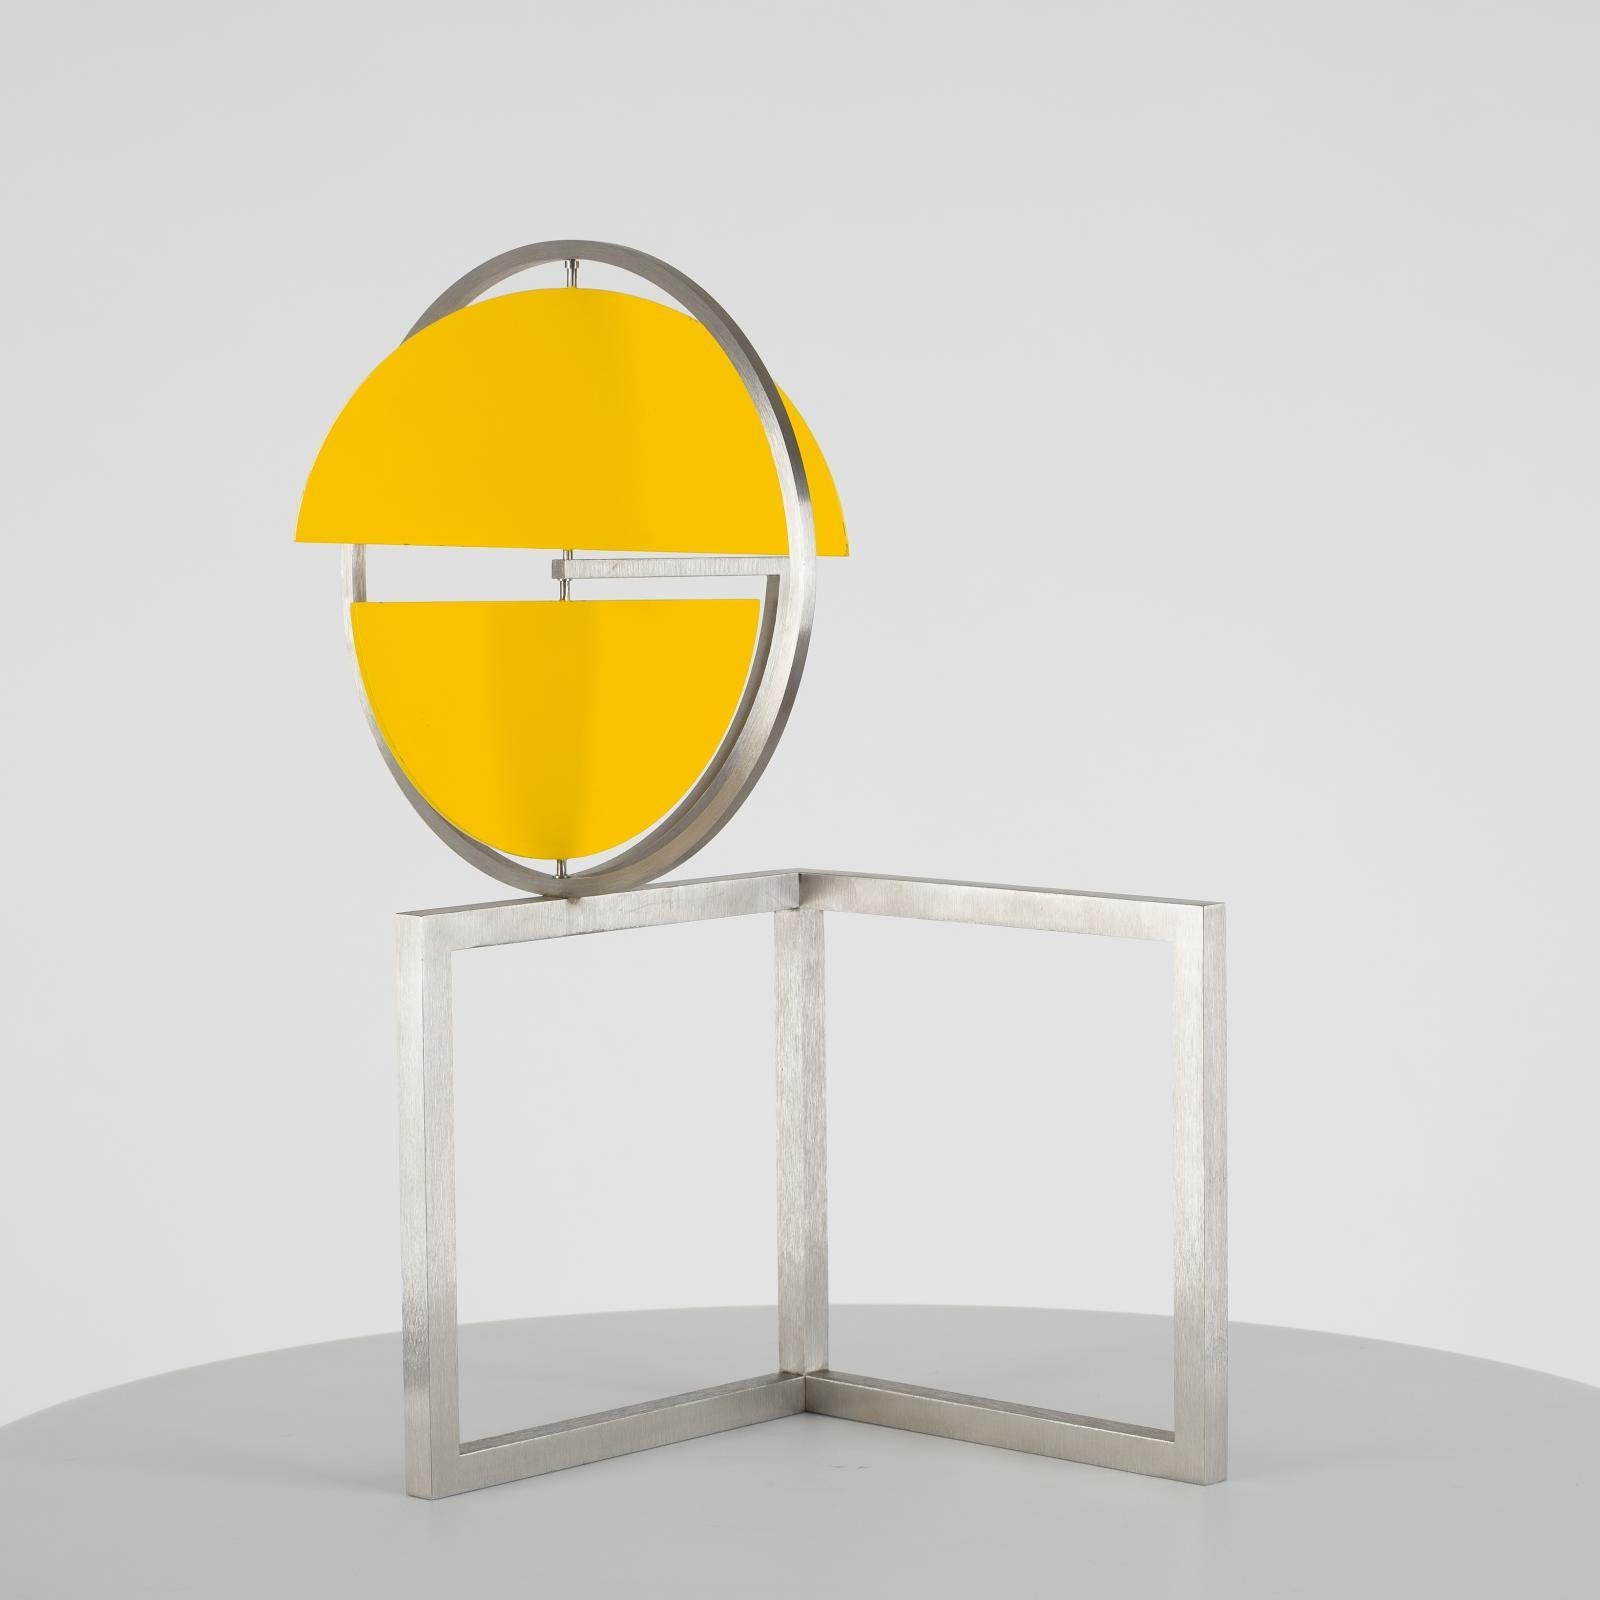 Disc jaune sur deux carrés, sculpture cinétique